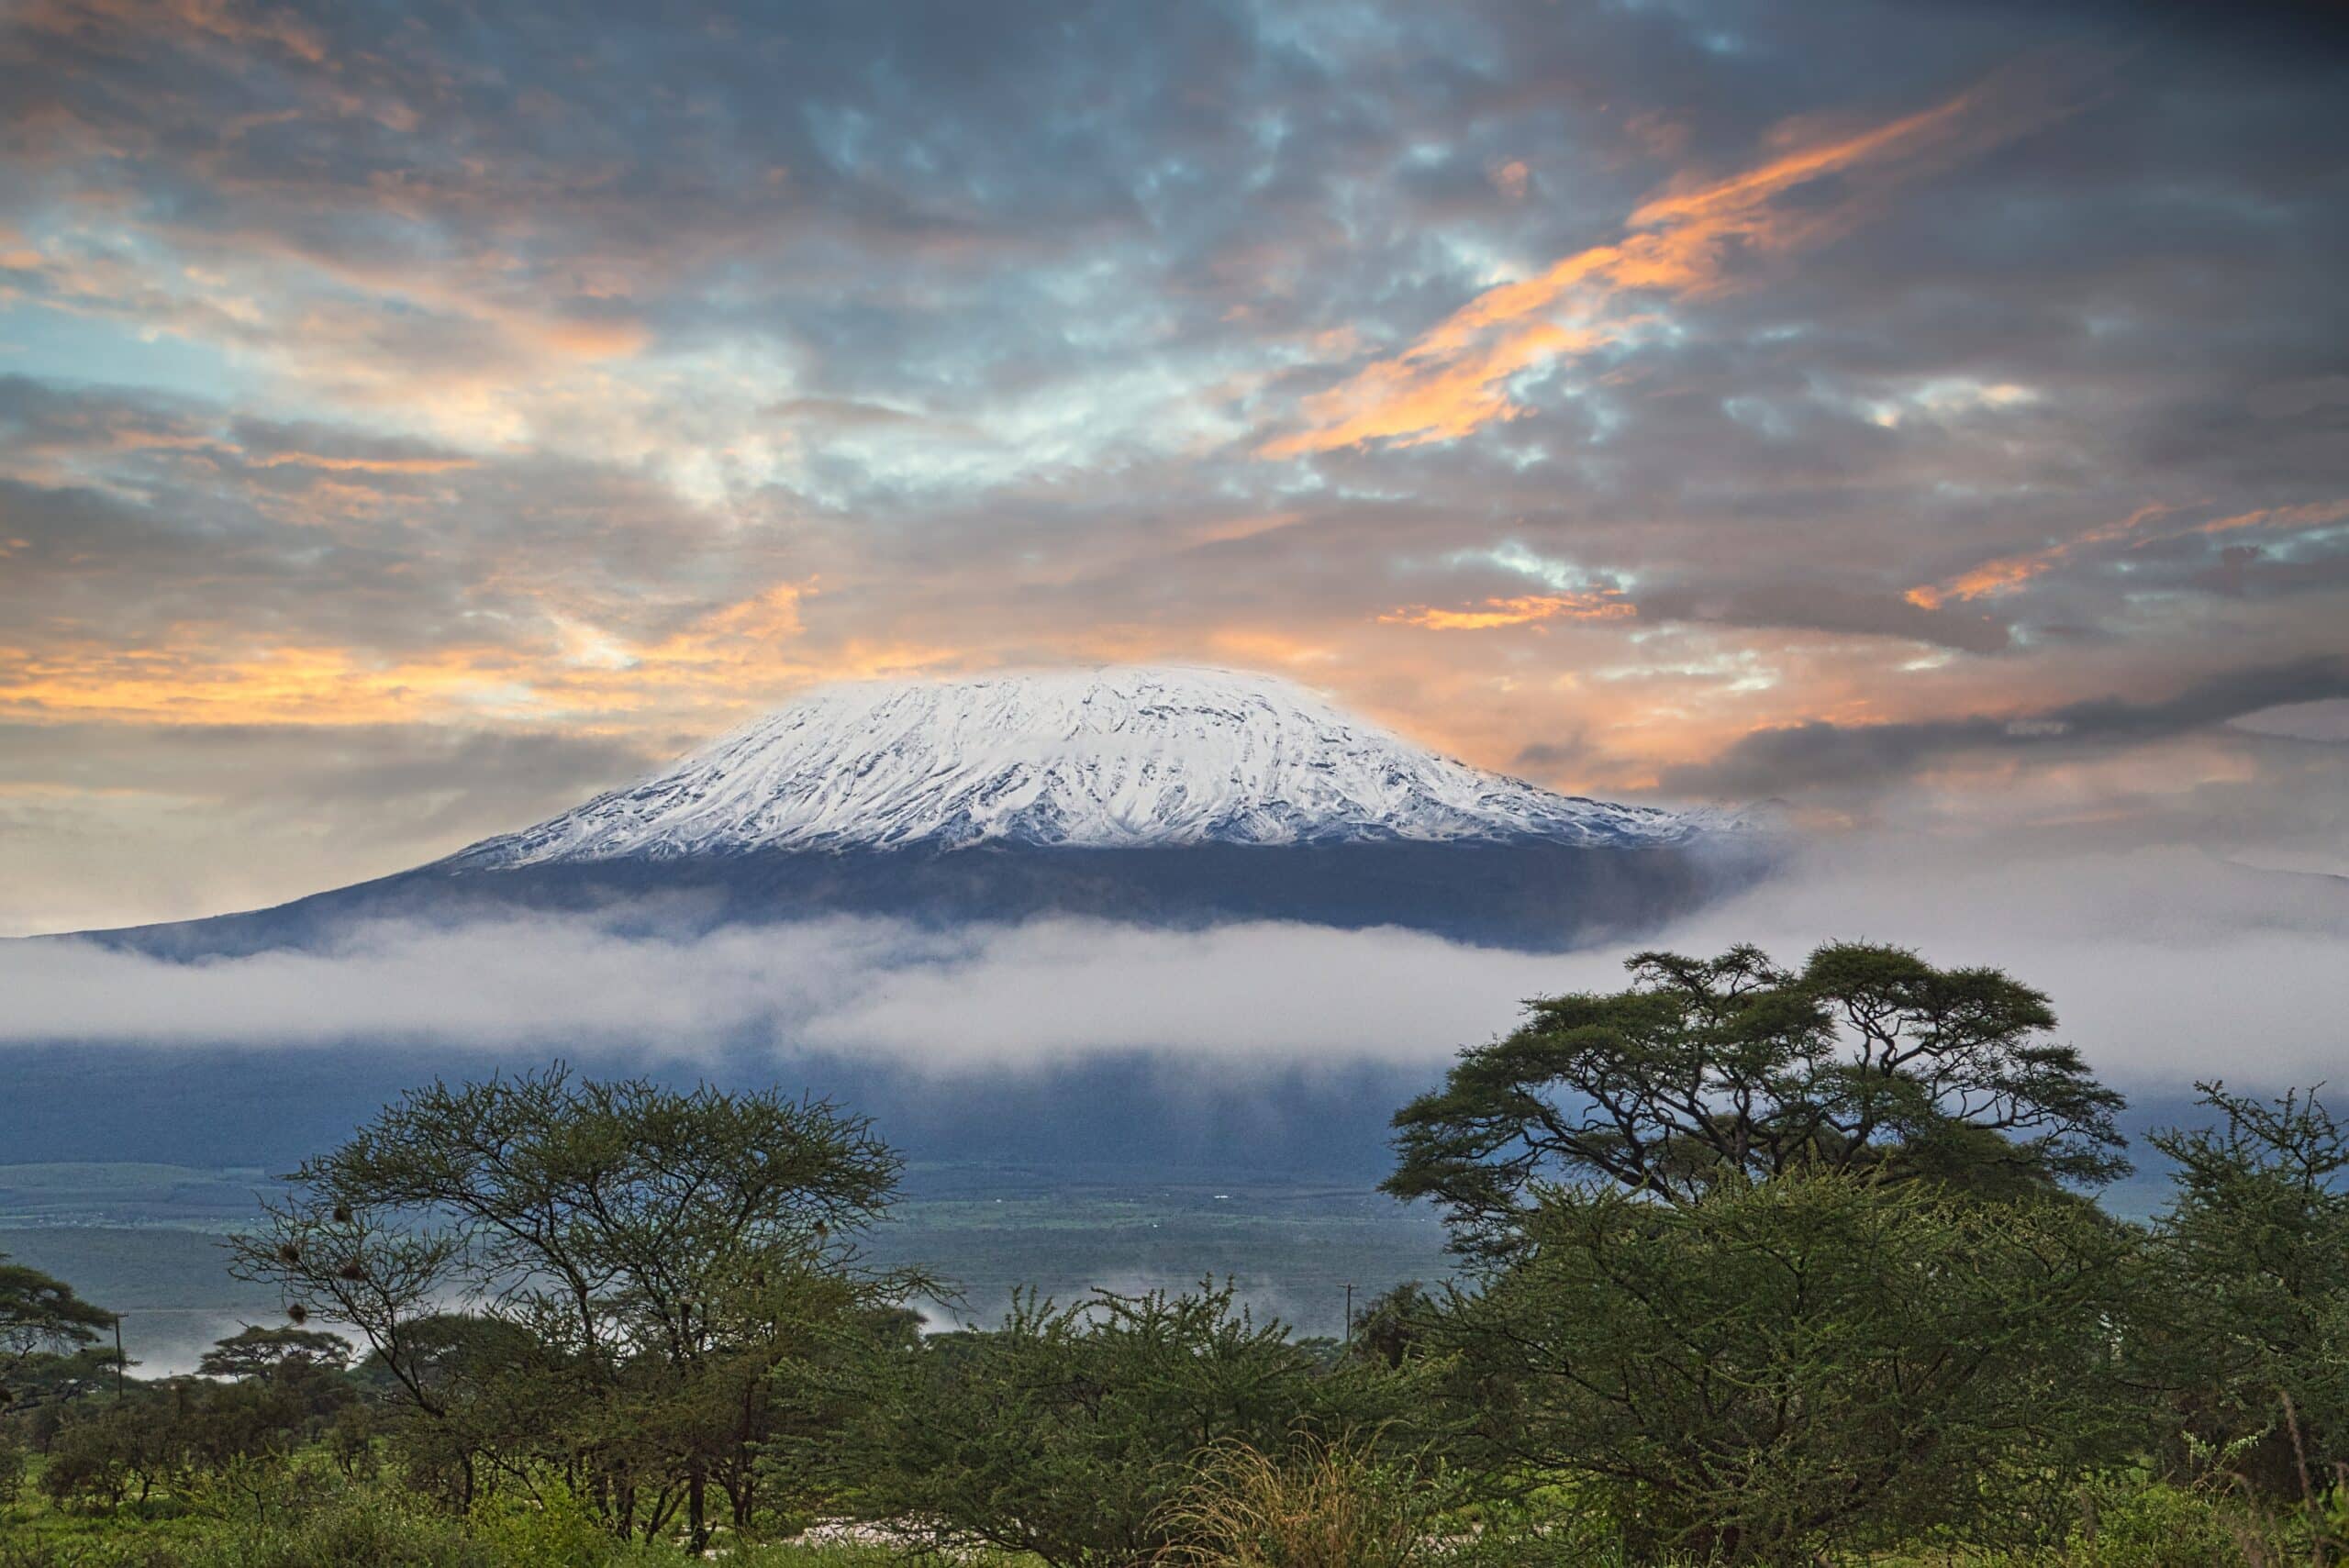 Gipfelblick auf den Kilimandscharo vom West-Kilimandscharo